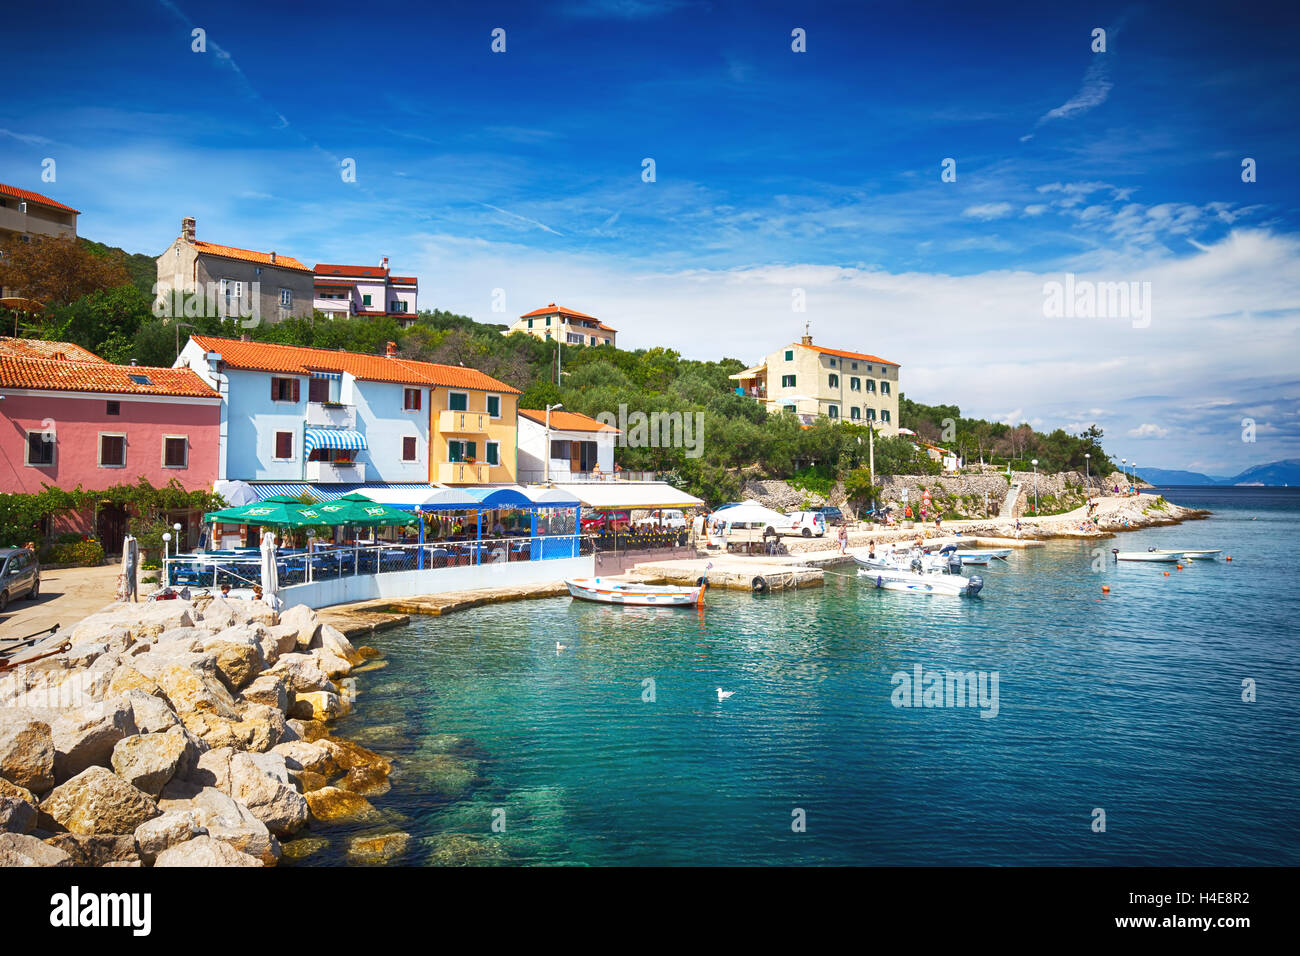 Vista del villaggio Valun con il porto e le barche, isola di Cres, Croazia Foto Stock